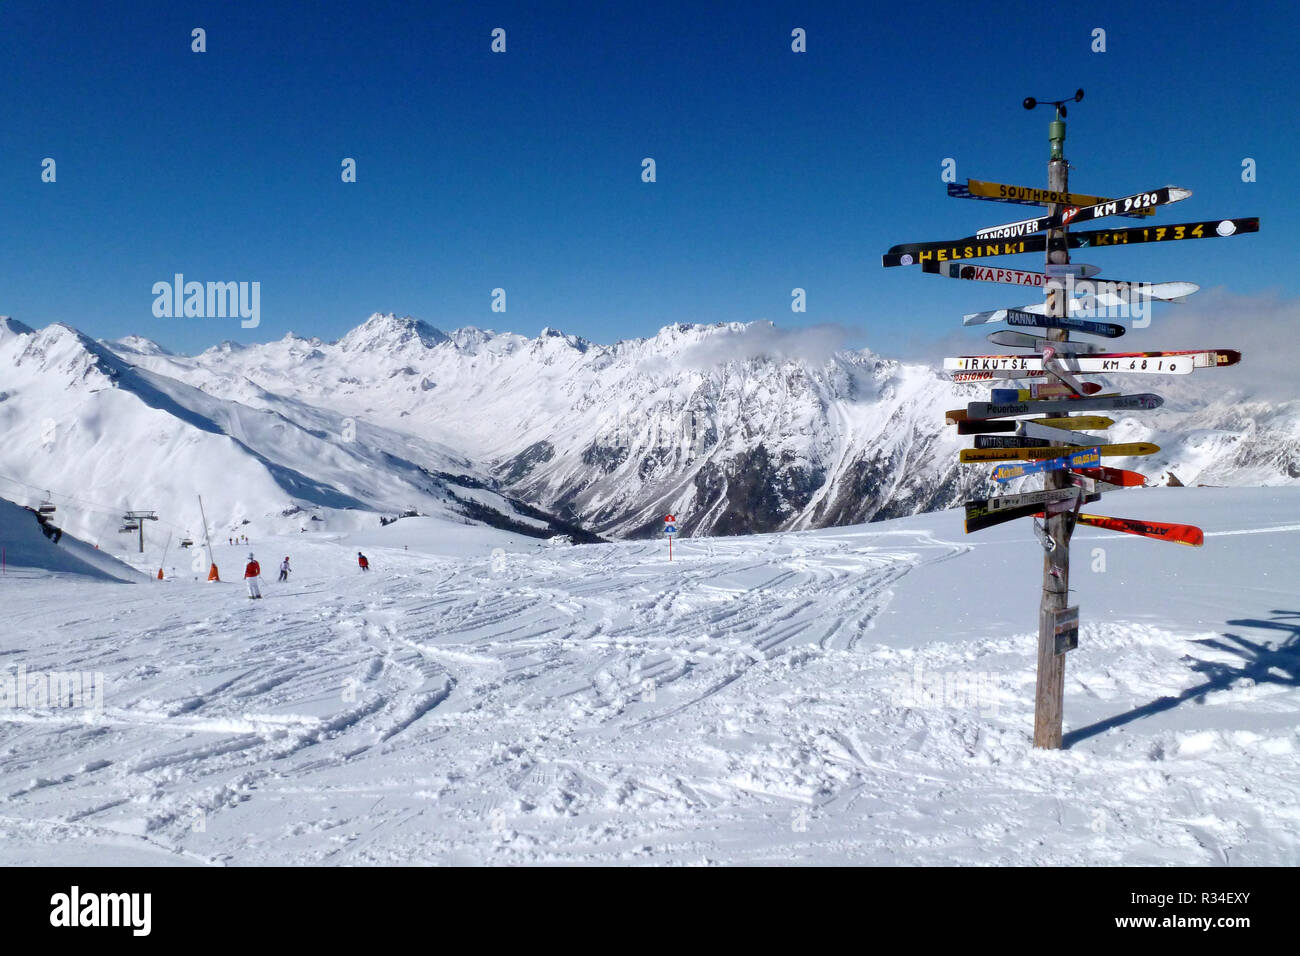 ski resort ischgl-samnaun Stock Photo: 225678291 - Alamy